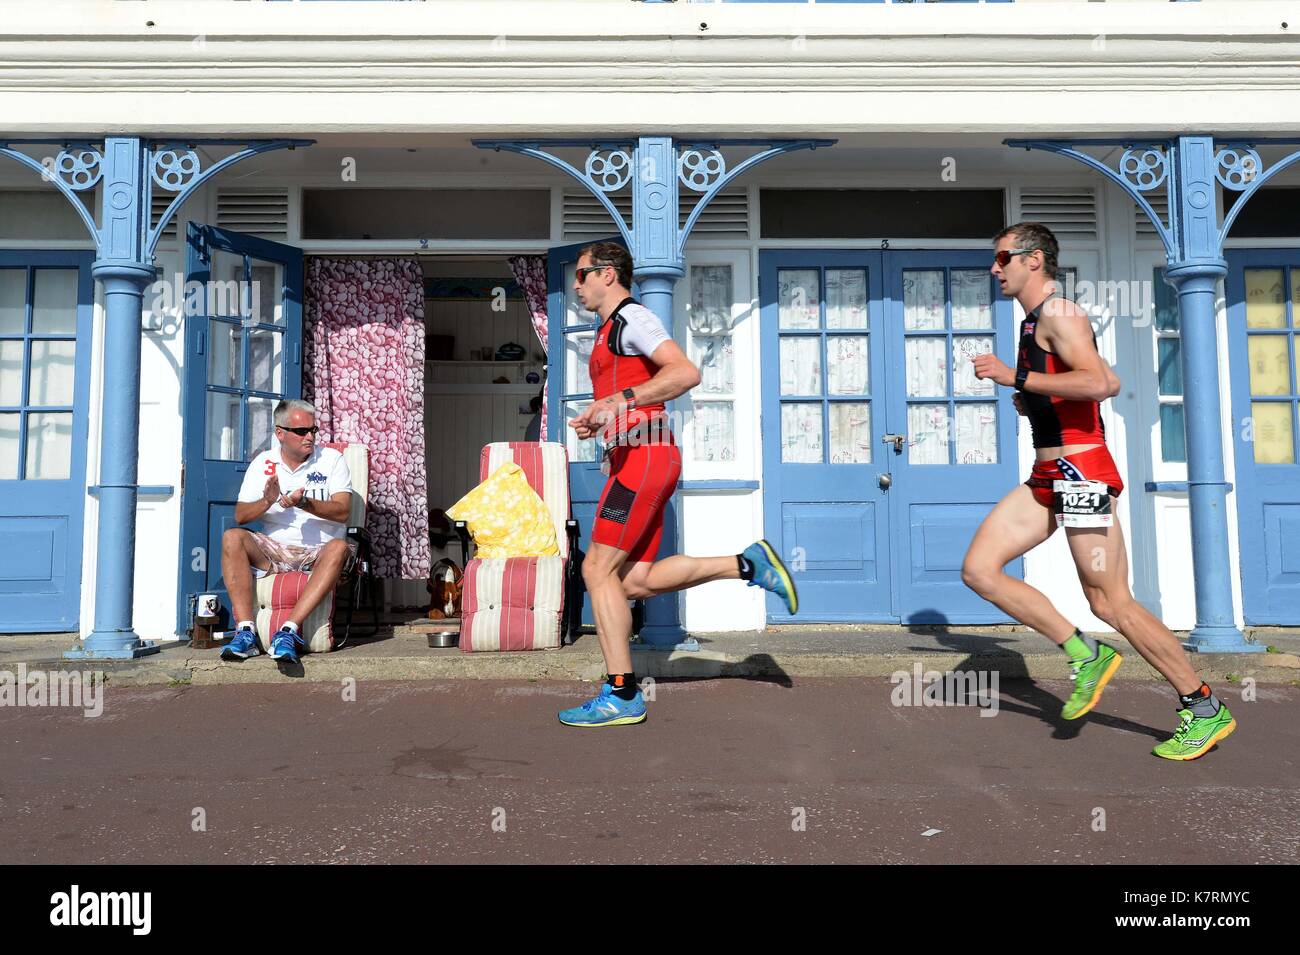 Ironman 70,3 concorrente durante la fase di esecuzione. Credito: finnbarr webster/alamy live news Foto Stock